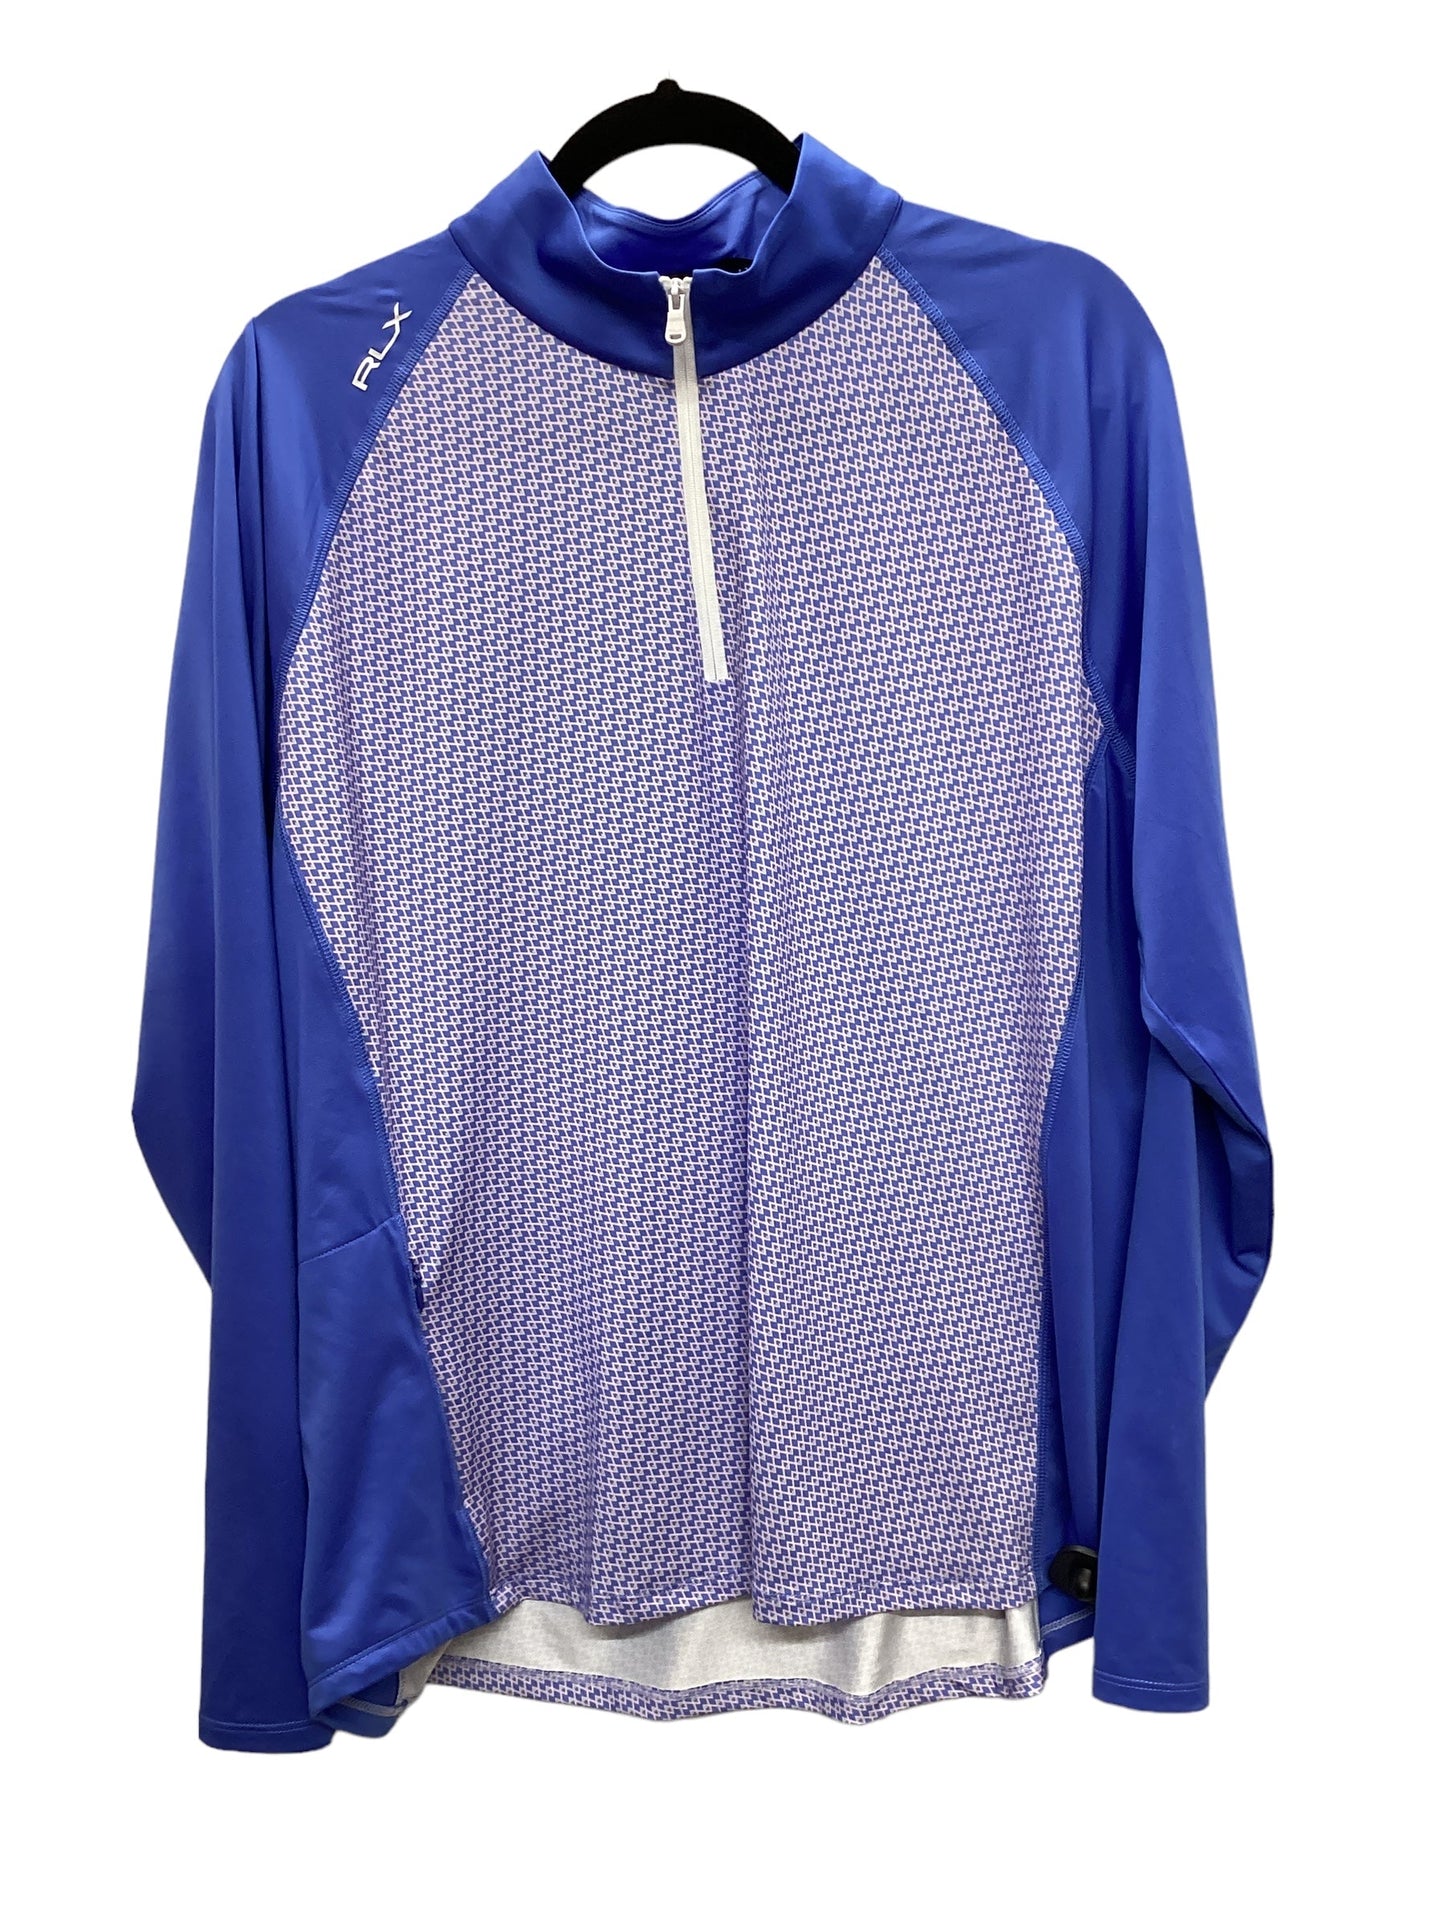 Blue Athletic Jacket Rlx, Size 2x